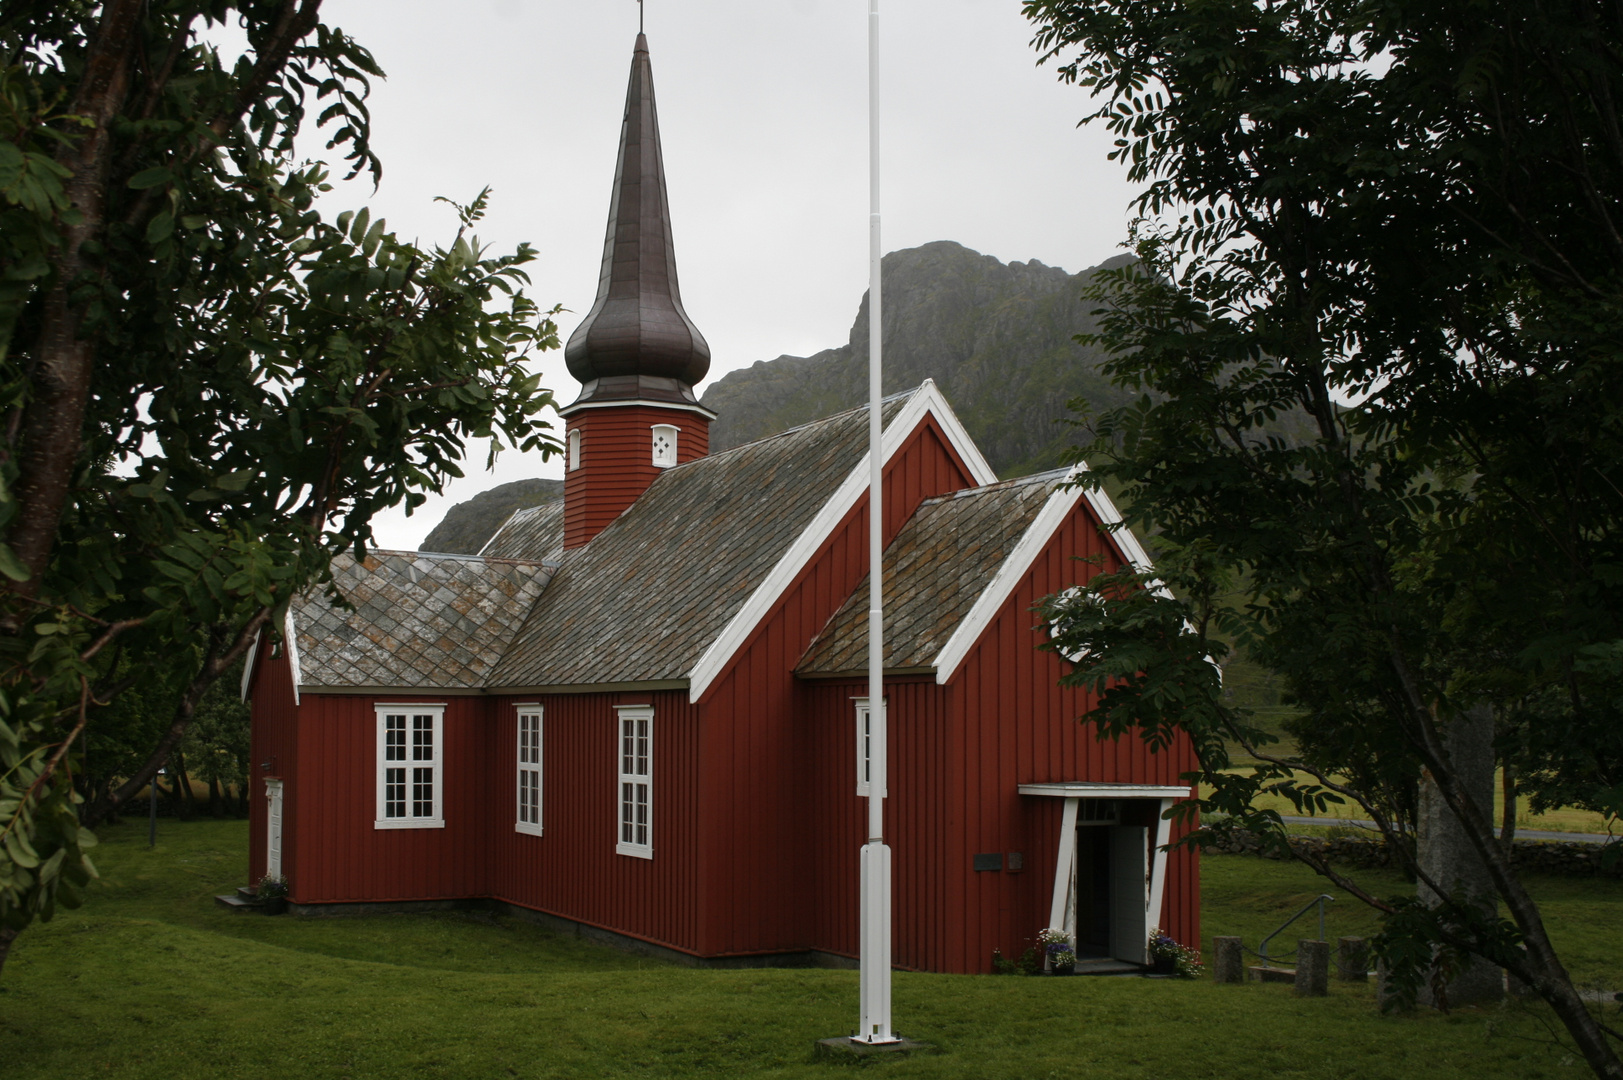 Falkstad Kirke in rot Stabkirche